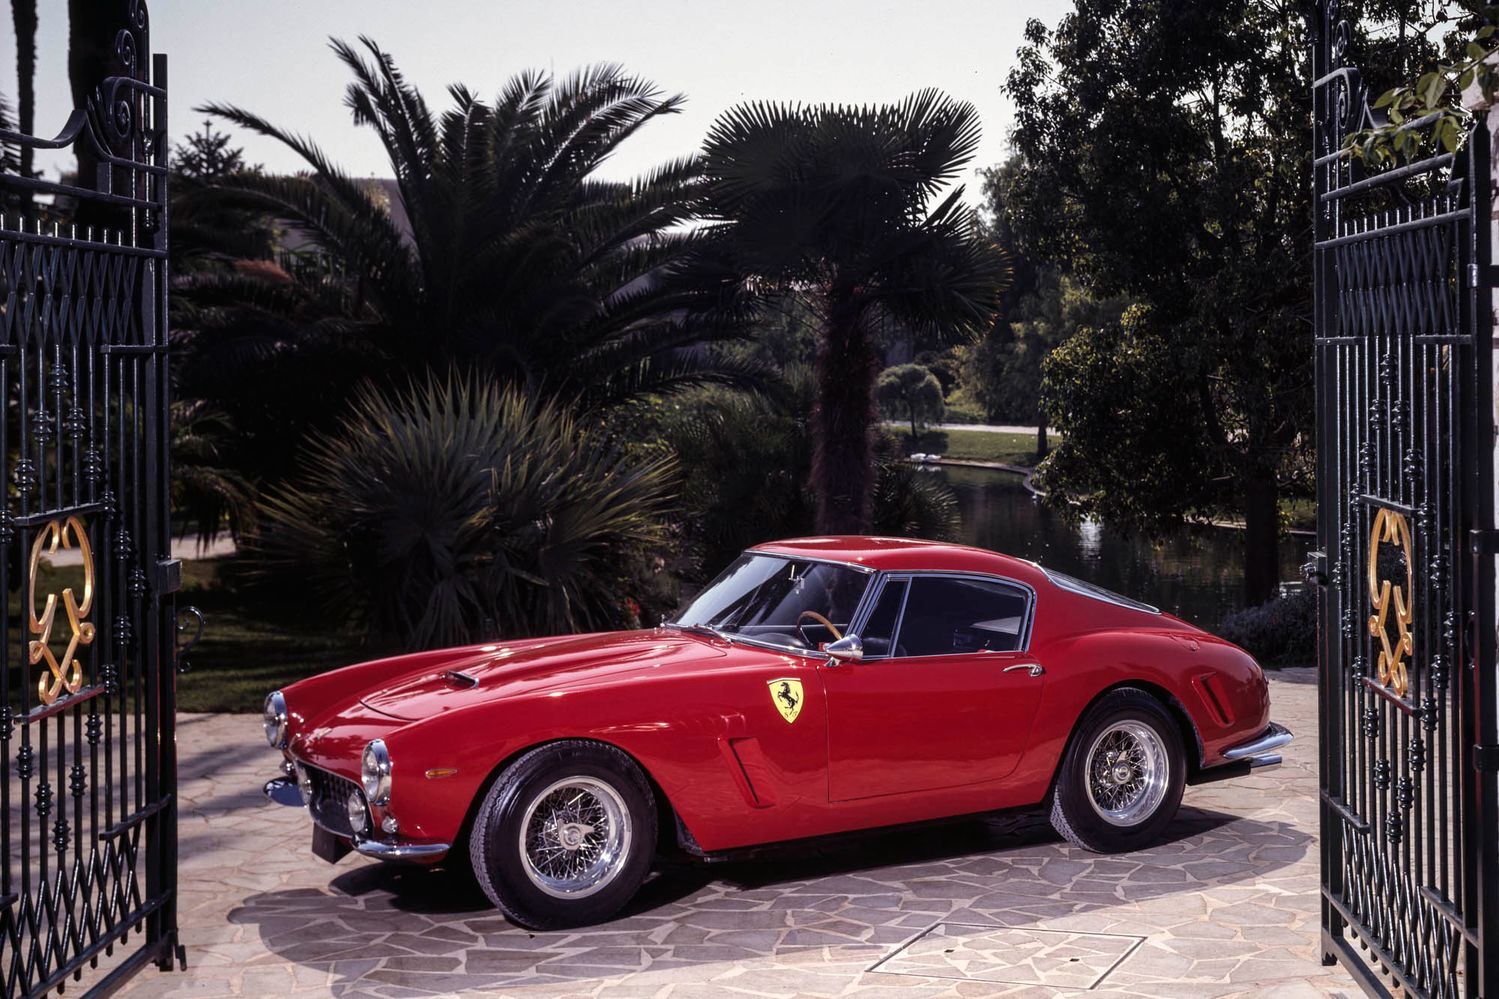 Gallery: 70 years of Ferrari